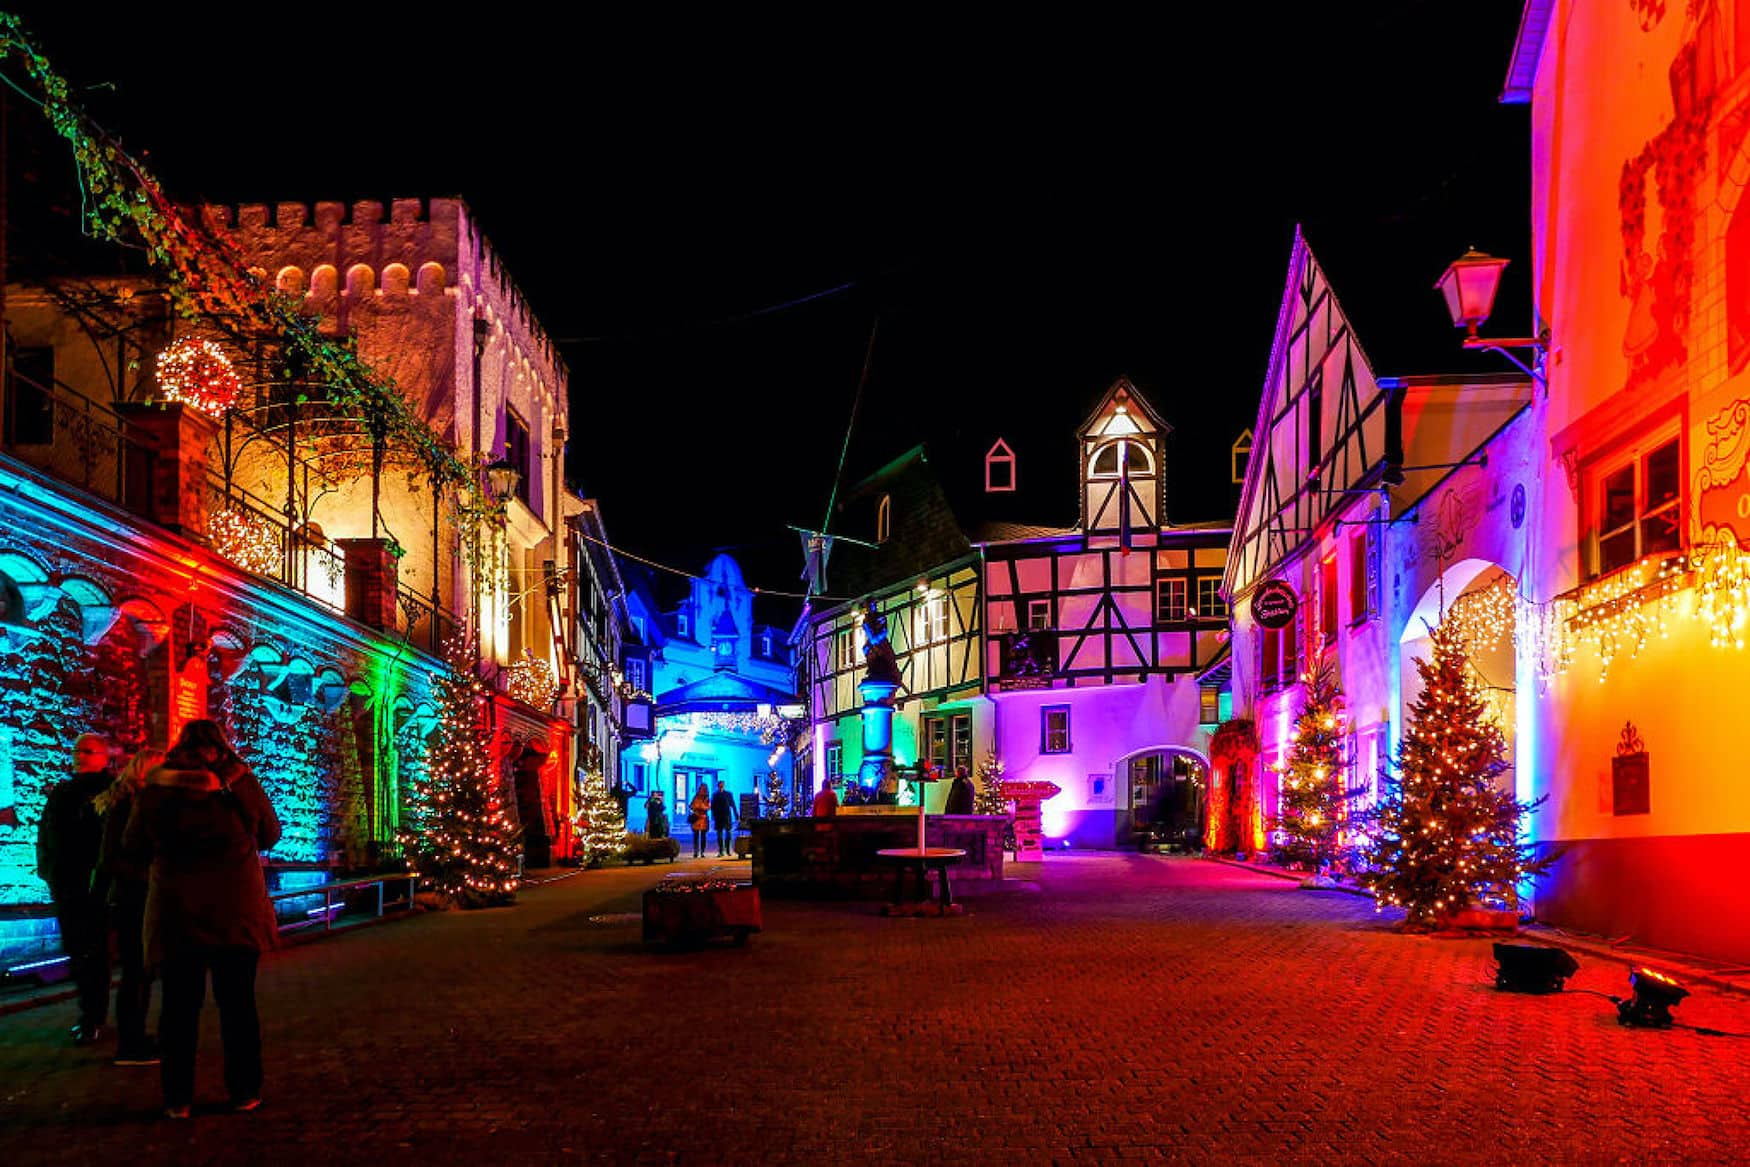 Der historische Ortskern von Winningen ist zur Weihnachtszeit festlich geschmückt und in guten Farben beleuchtet.